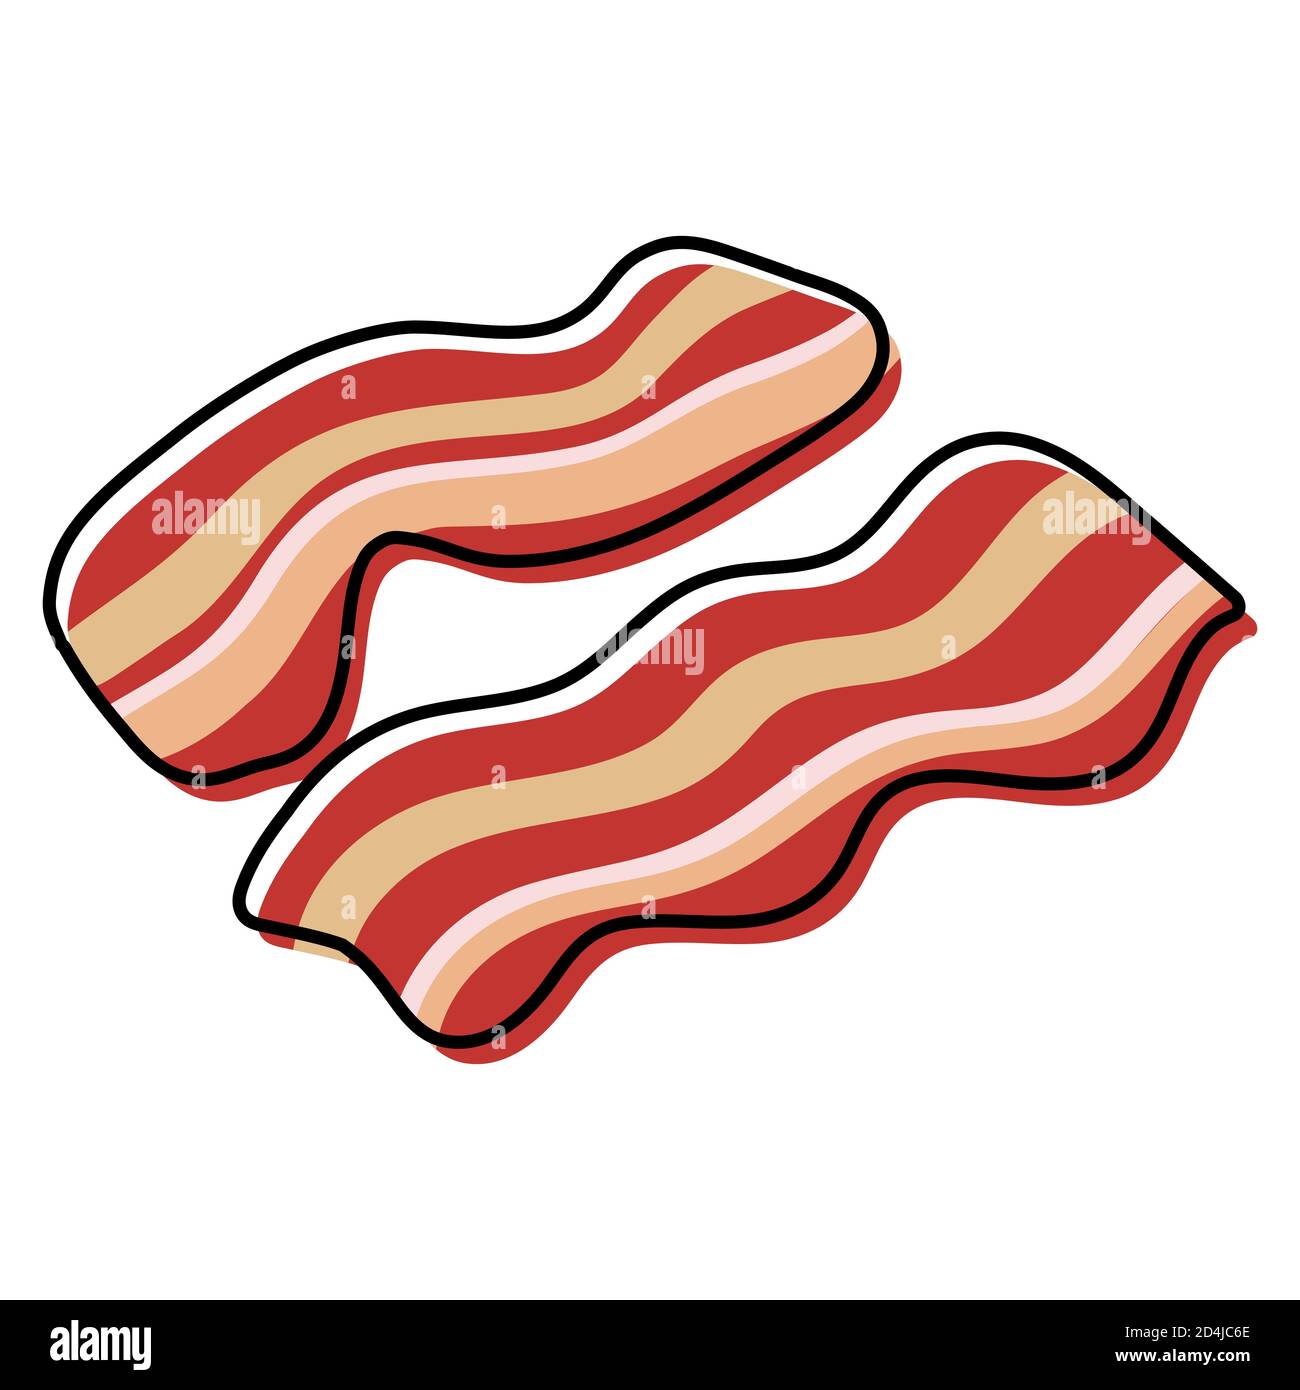 Deux tranches de bacon ondulé sur fond blanc. Tranches de bacon de caricature rôties. Illustration vectorielle simplifiée, couleur de contour remplie, isolée Illustration de Vecteur